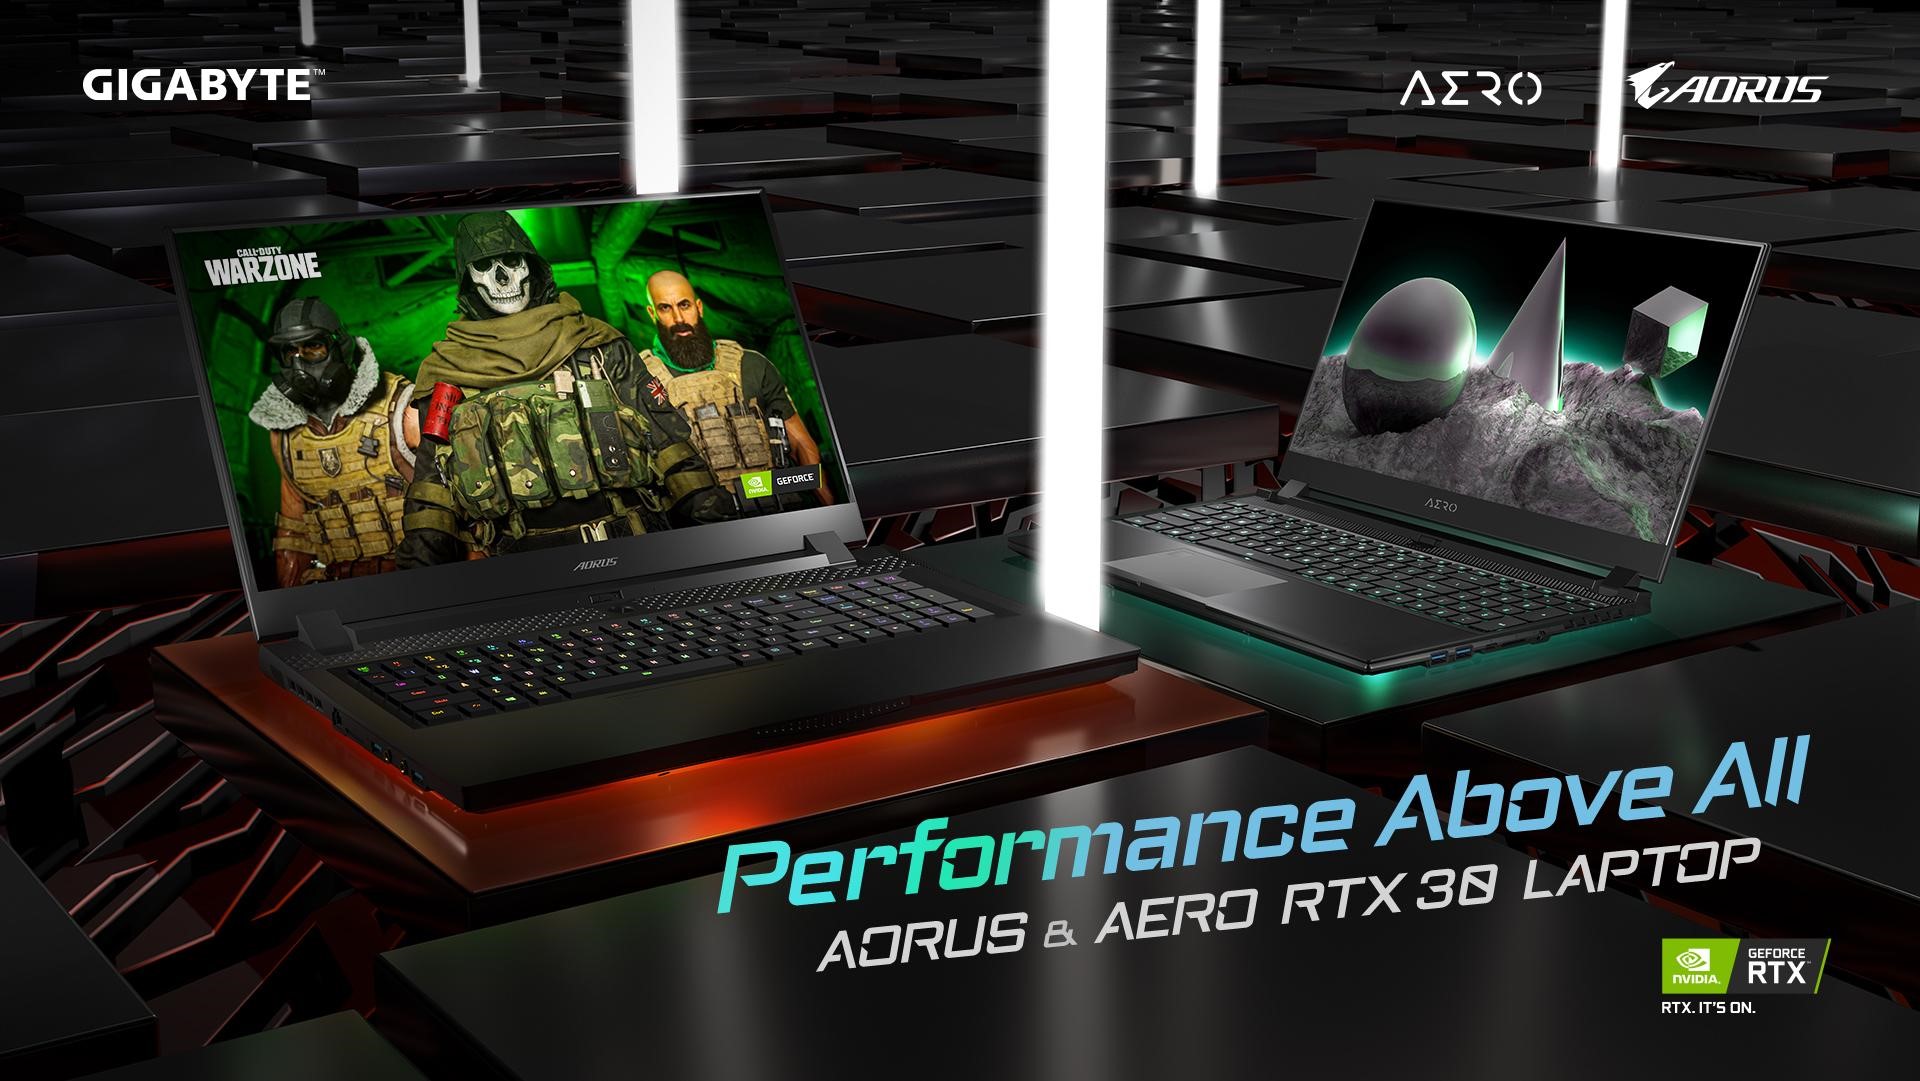 GIGABYTE presentó nuevos portátiles Aorus con GPU NVIDIA GeForce RTX de la serie 30 para 2021 en el evento de lanzamiento virtual Performance Above All